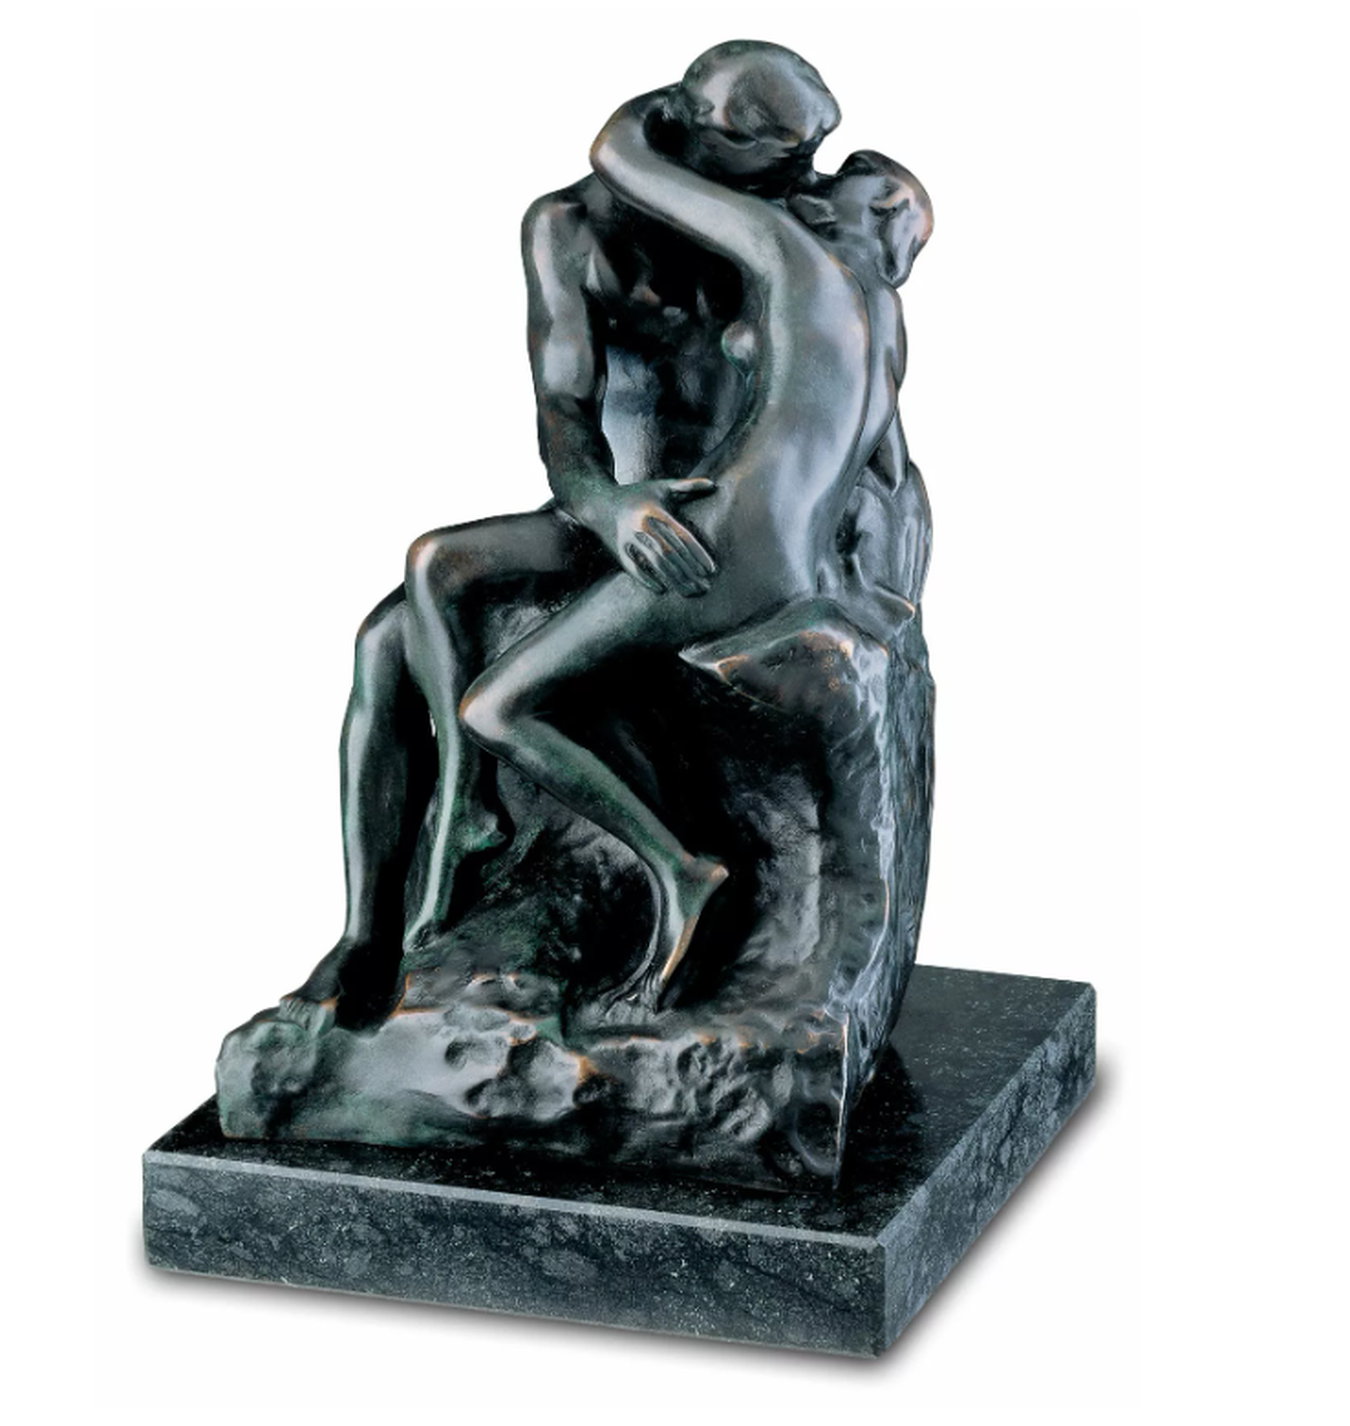 Bronzeskulptur "Der Kuss" (27 cm) von Auguste Rodin, Reduktion